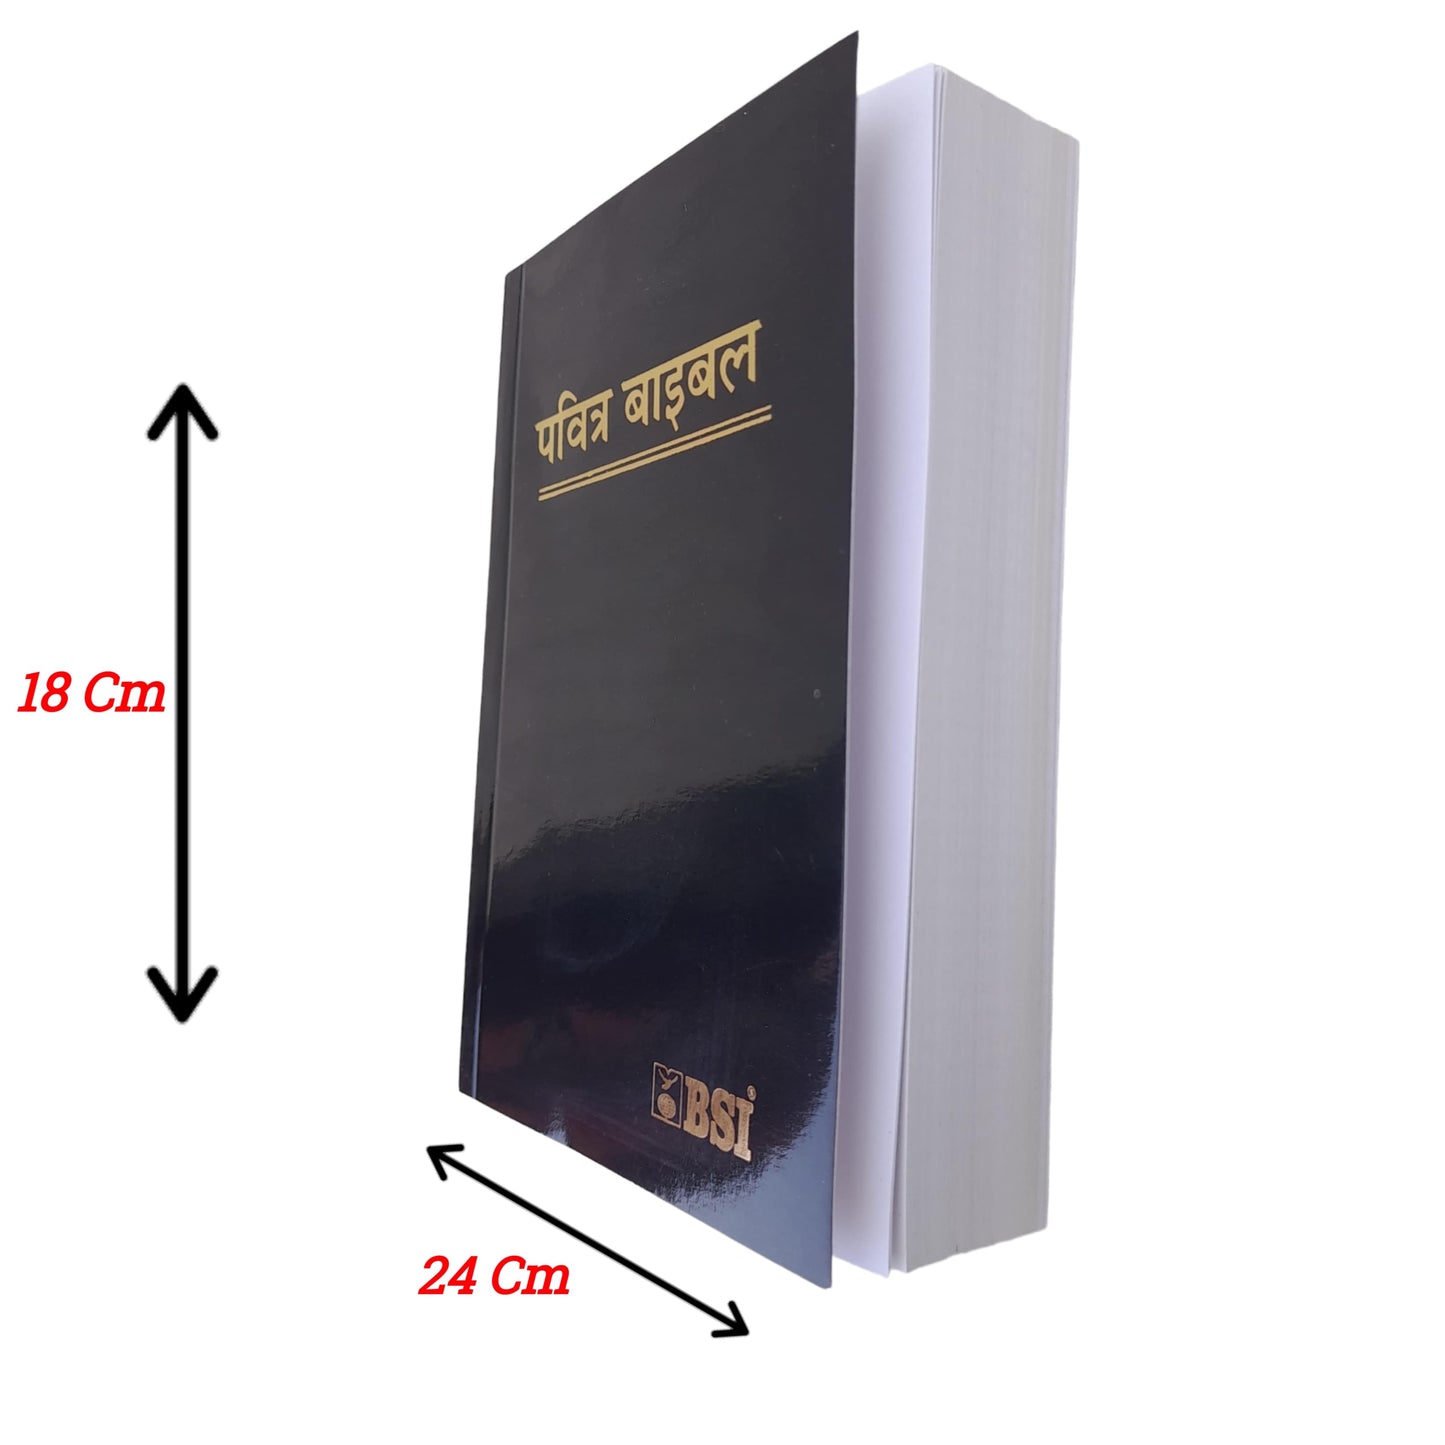 The Holy Small Hindi Bible